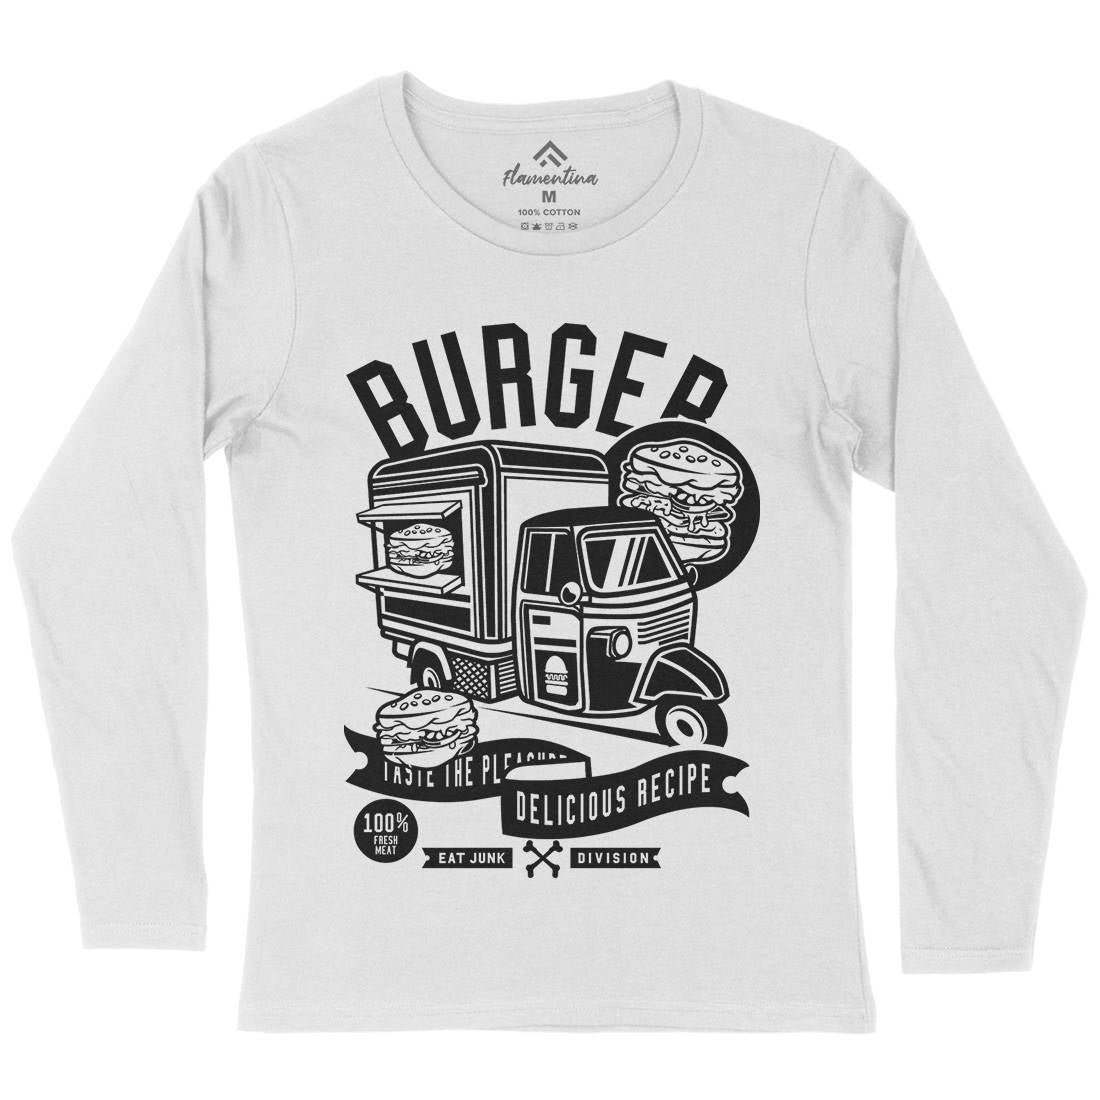 Burger Van Womens Long Sleeve T-Shirt Food B509